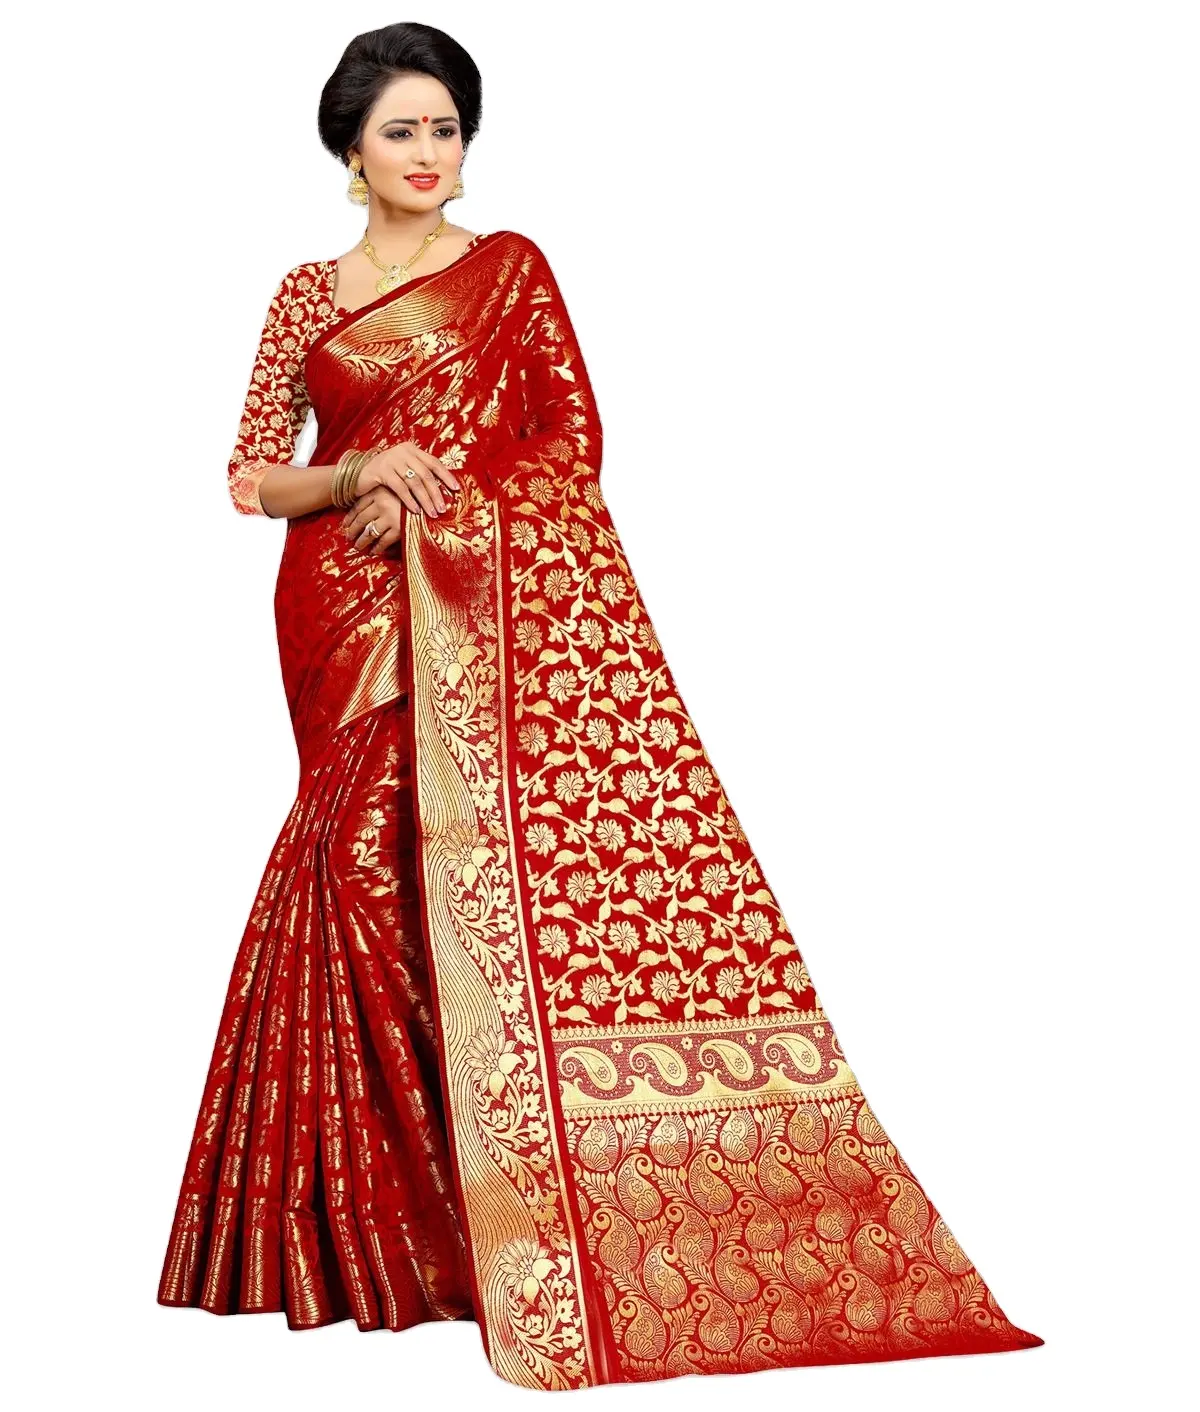 Banarasi Seide Premium Qualität Indian Elegant Look Party Wear zum Großhandels preis Sarees mit schönen Weberei